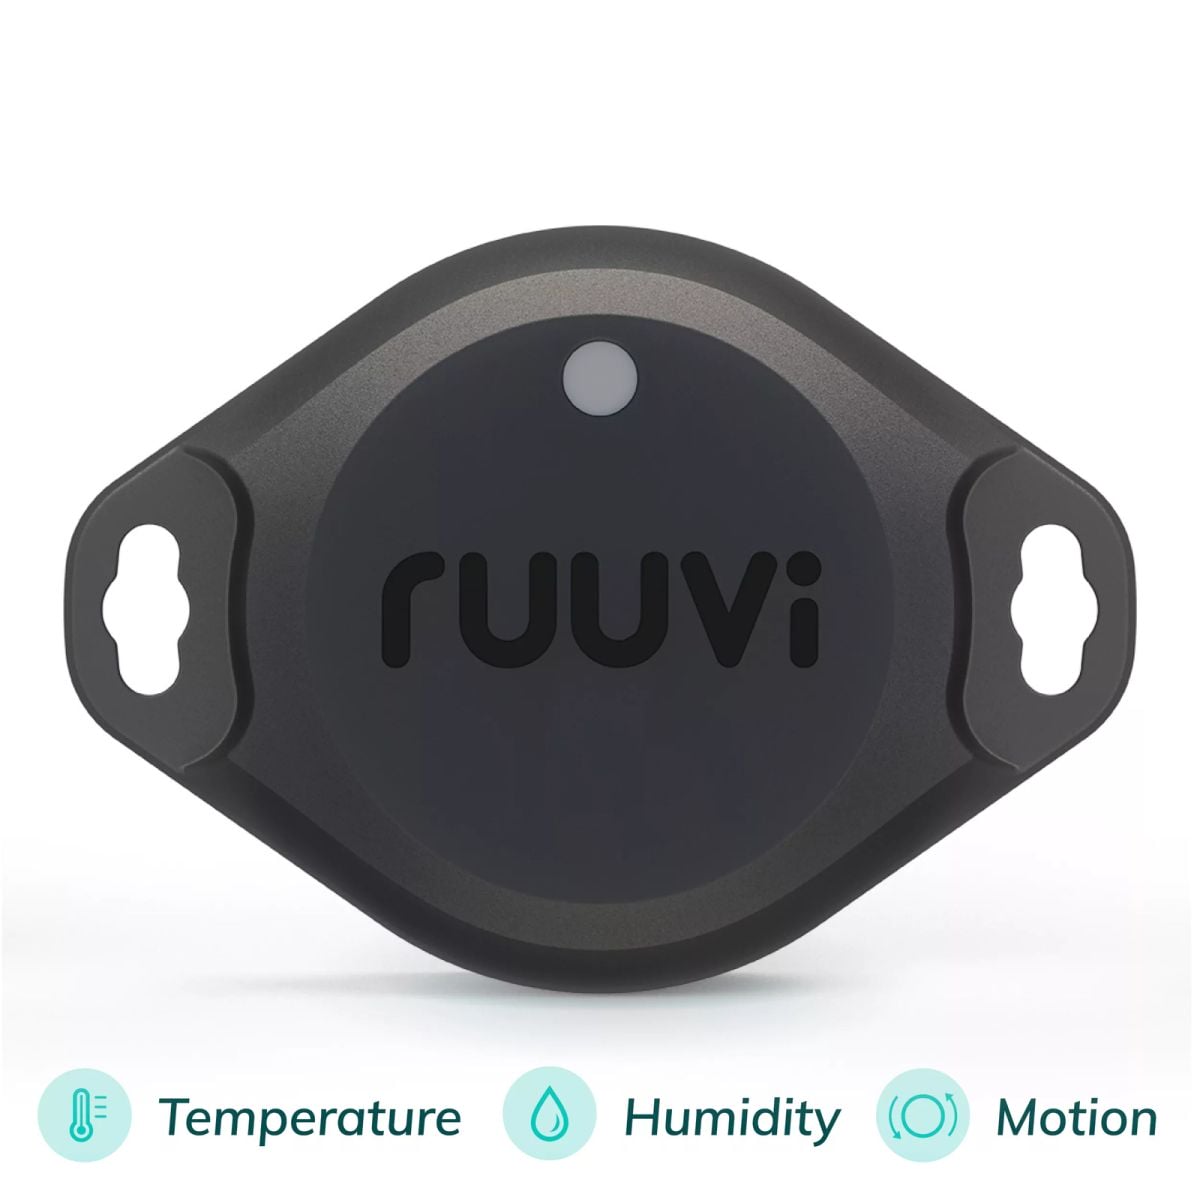 Ruuvi's RuuviTag 3 in 1 IoT Sensor - Temperature, Humidity, Motion